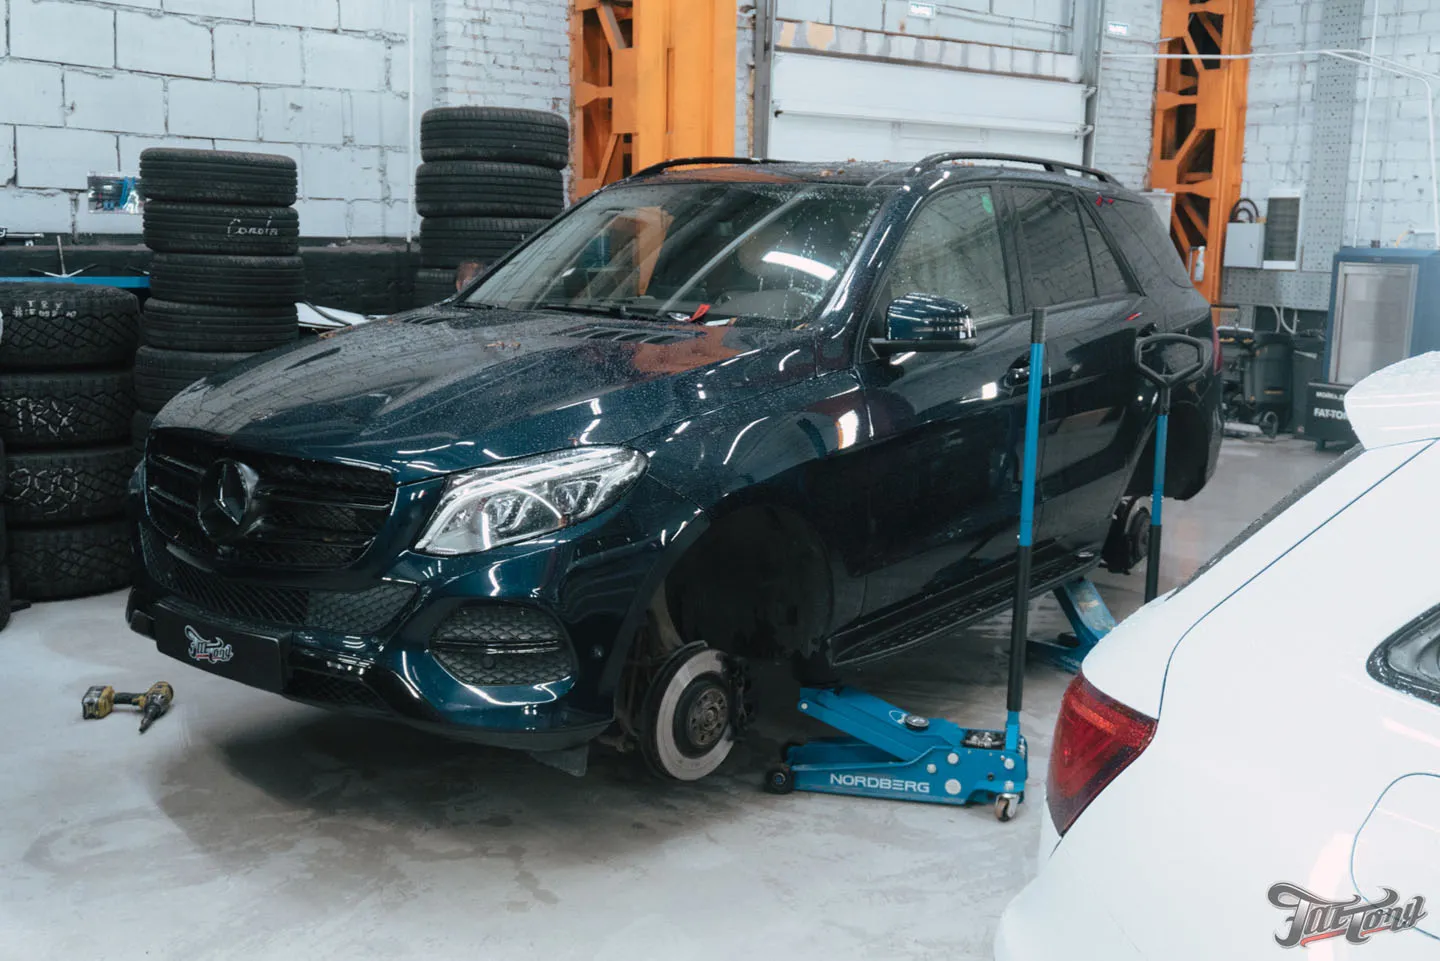 Фирменный шиномонтаж с балансировкой и адаптацией для Mercedes GLE